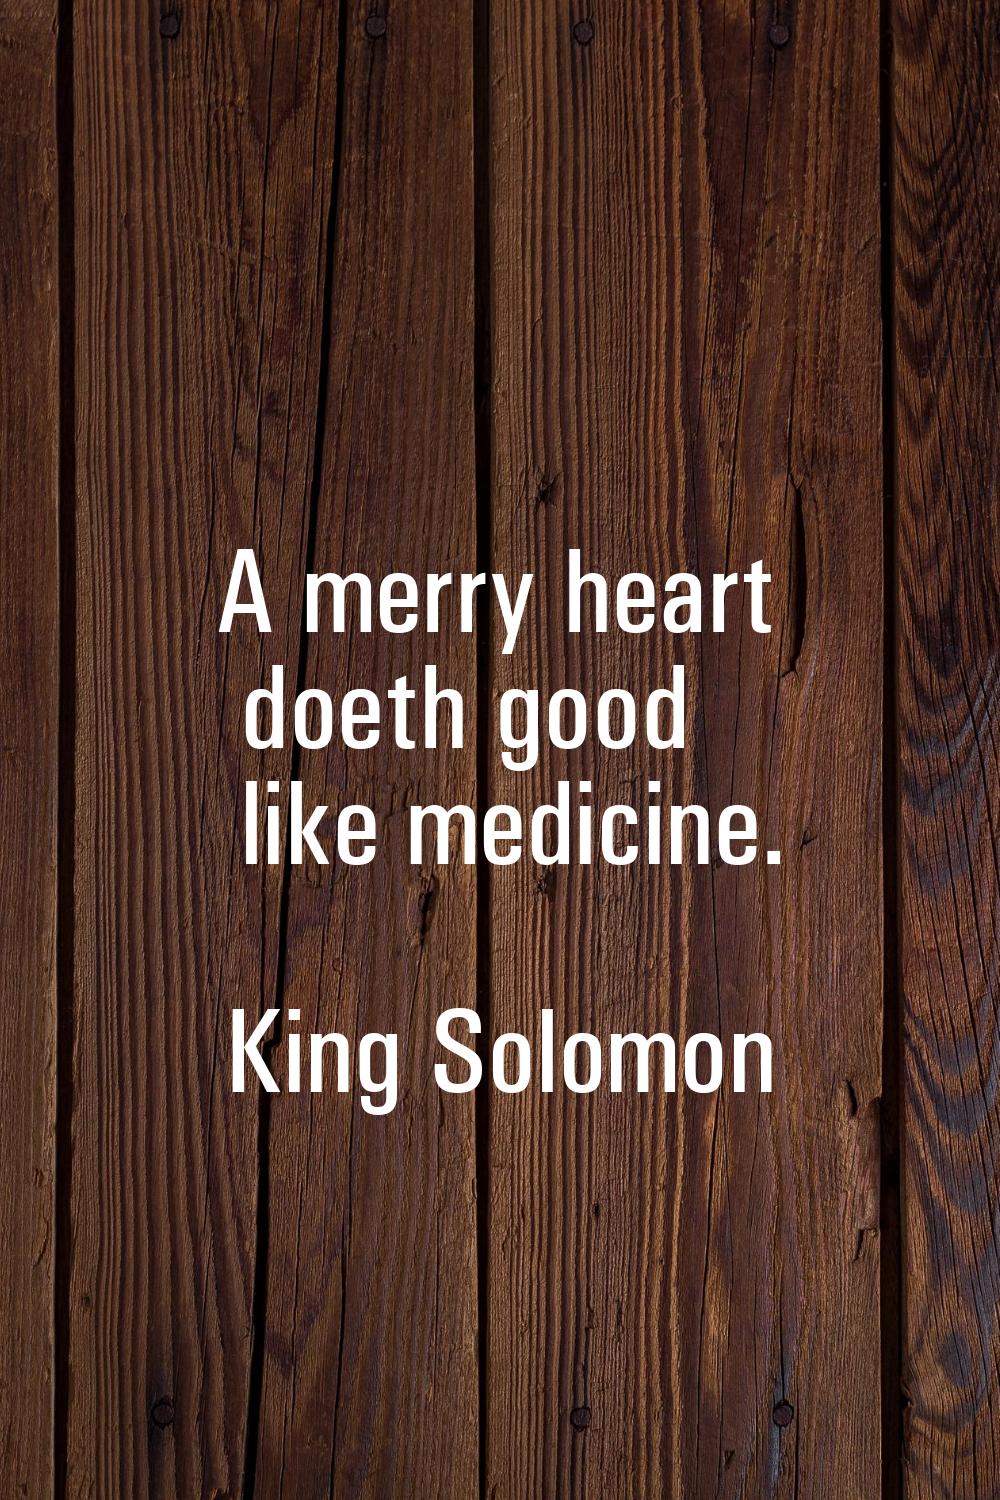 A merry heart doeth good like medicine.